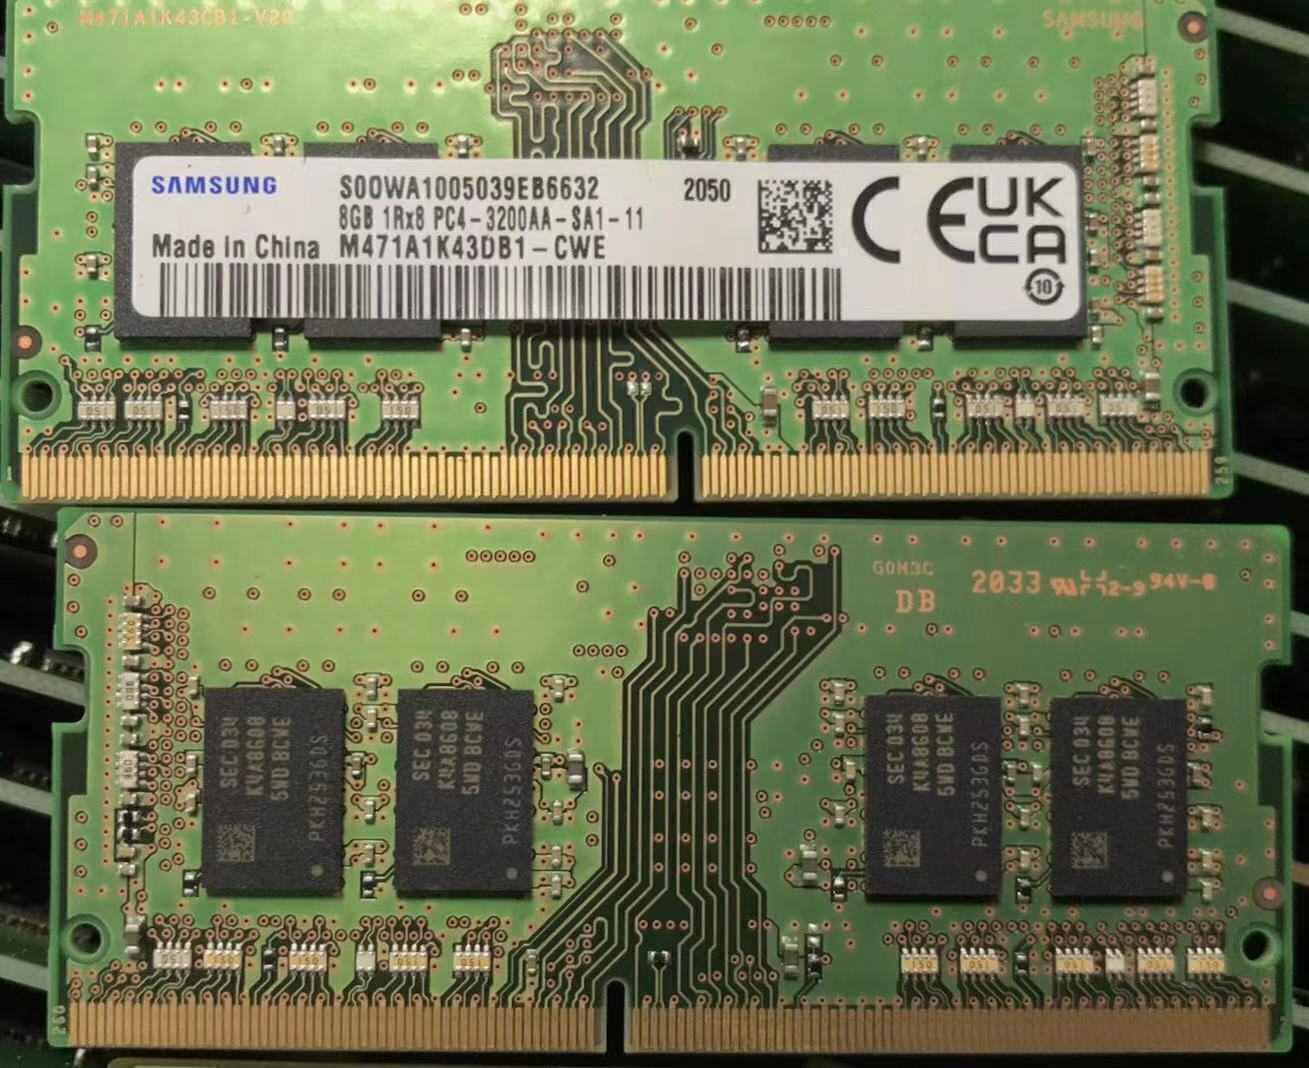 Samsung 8GB DDR4 RAM S00WA1005039EB6632 1Rx8 PC4-3200AA-SA1-11 M47A1K43DB1-CWE